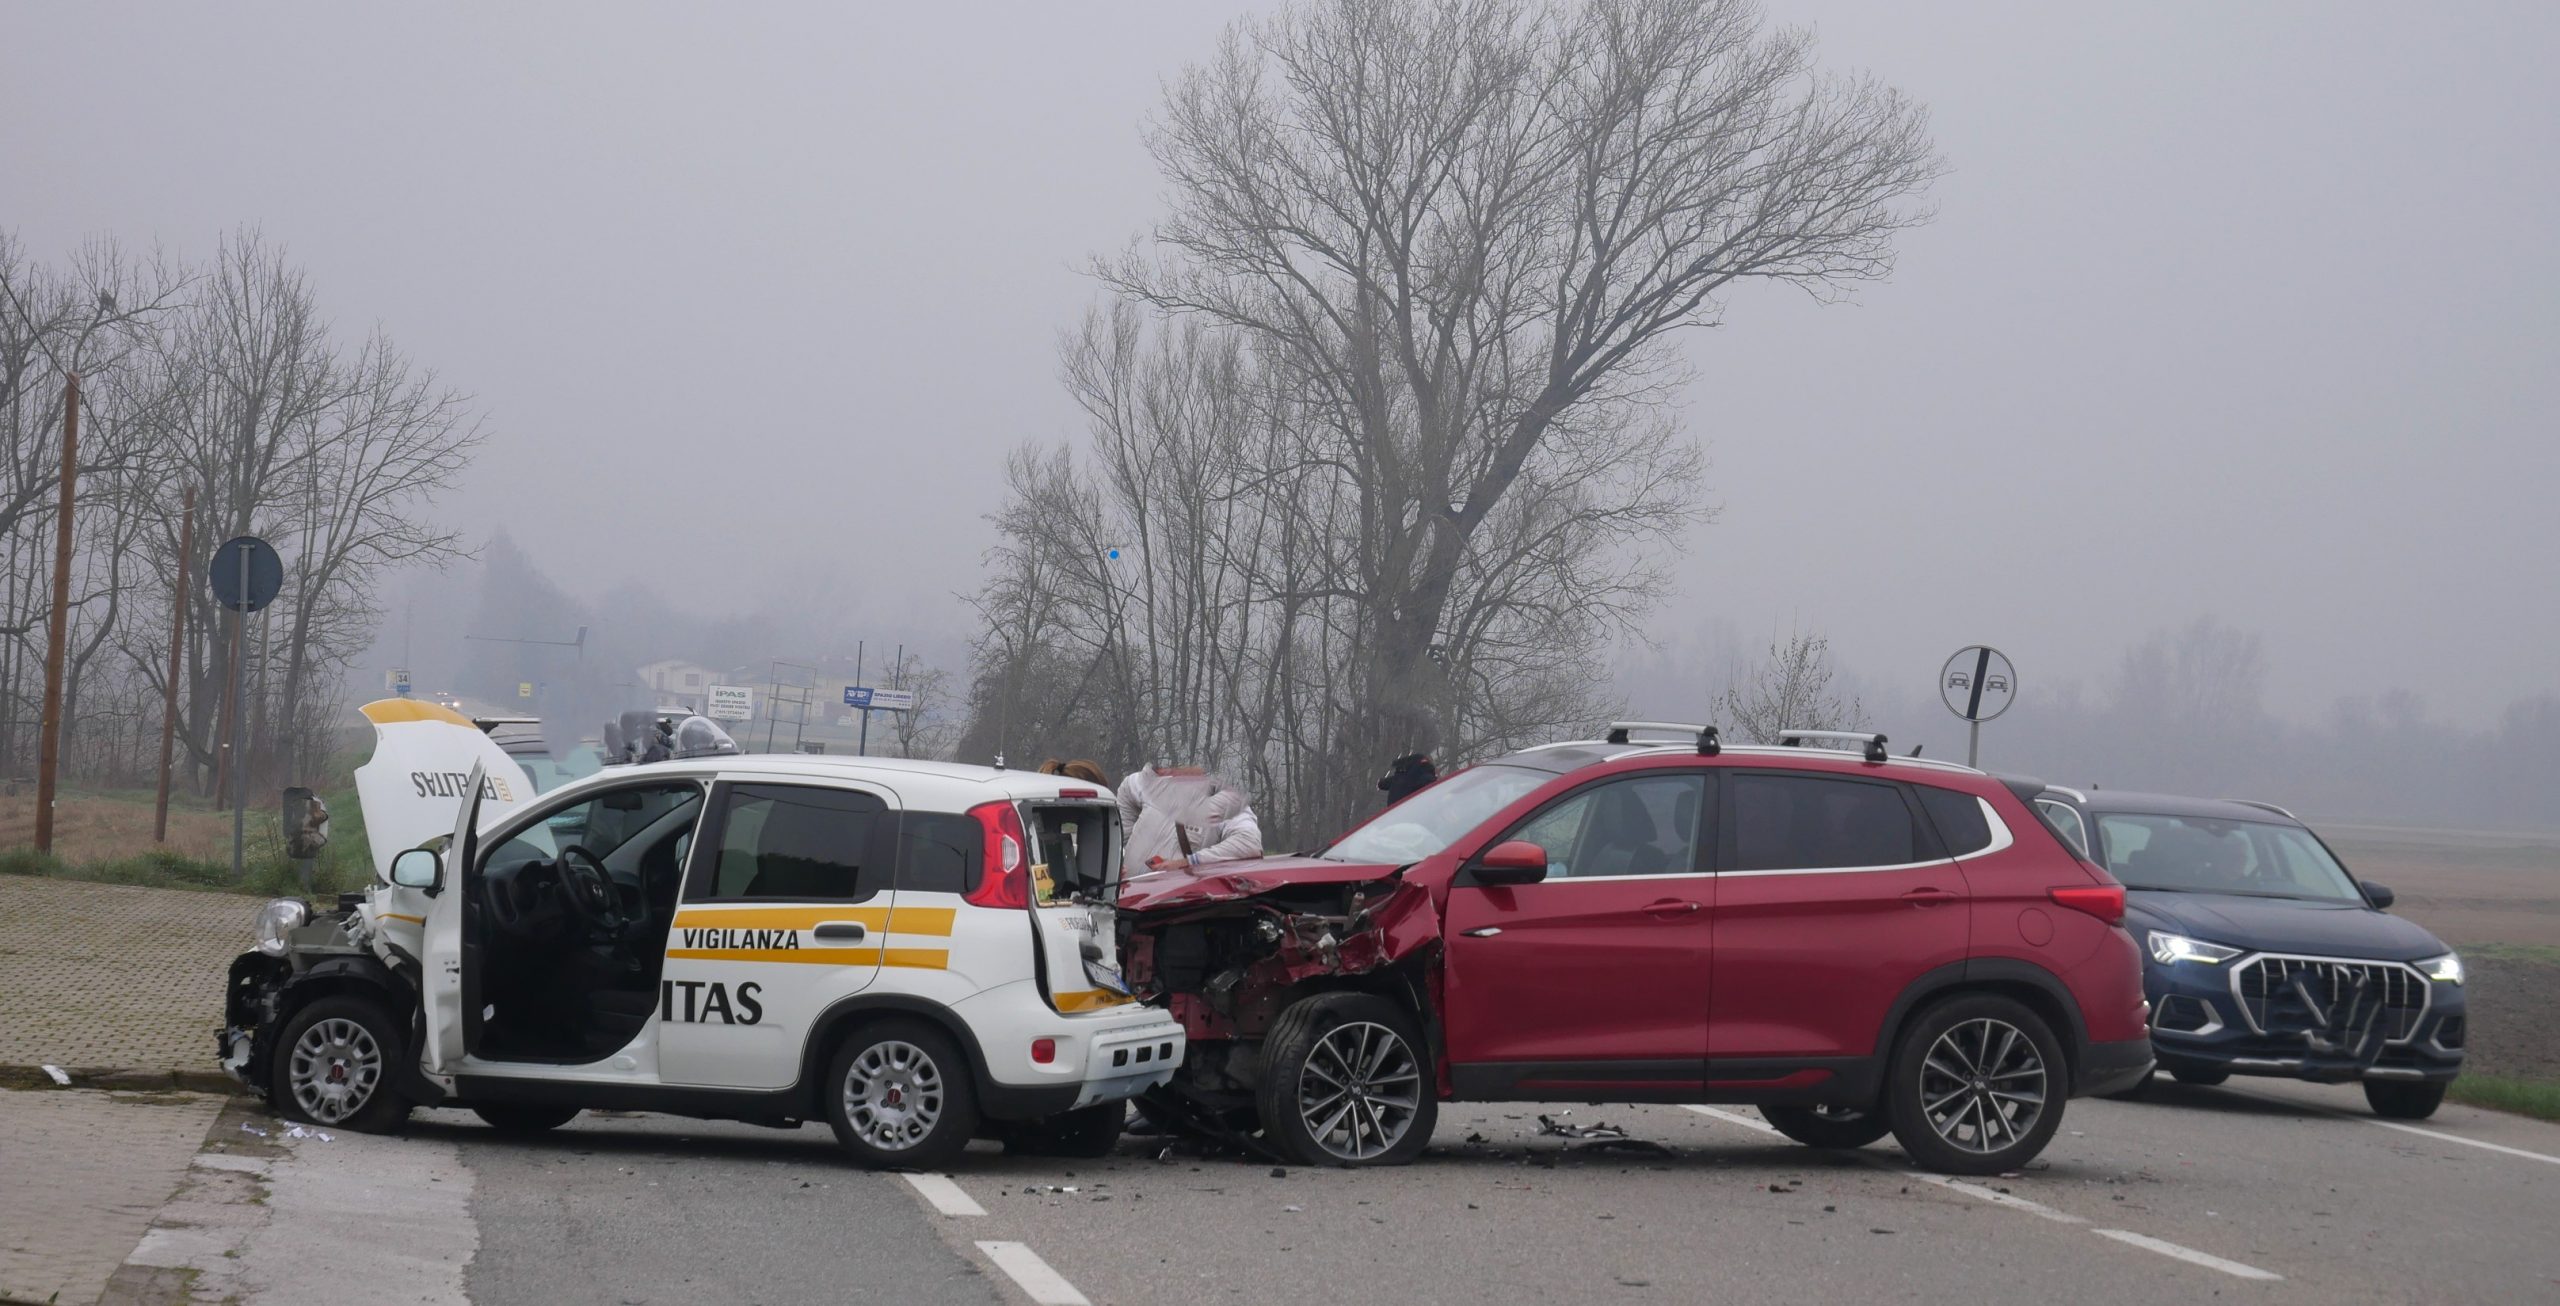 CARESANABLOT / QUINTO VERCELLESE – Tre auto in collisione, una finisce nel campo